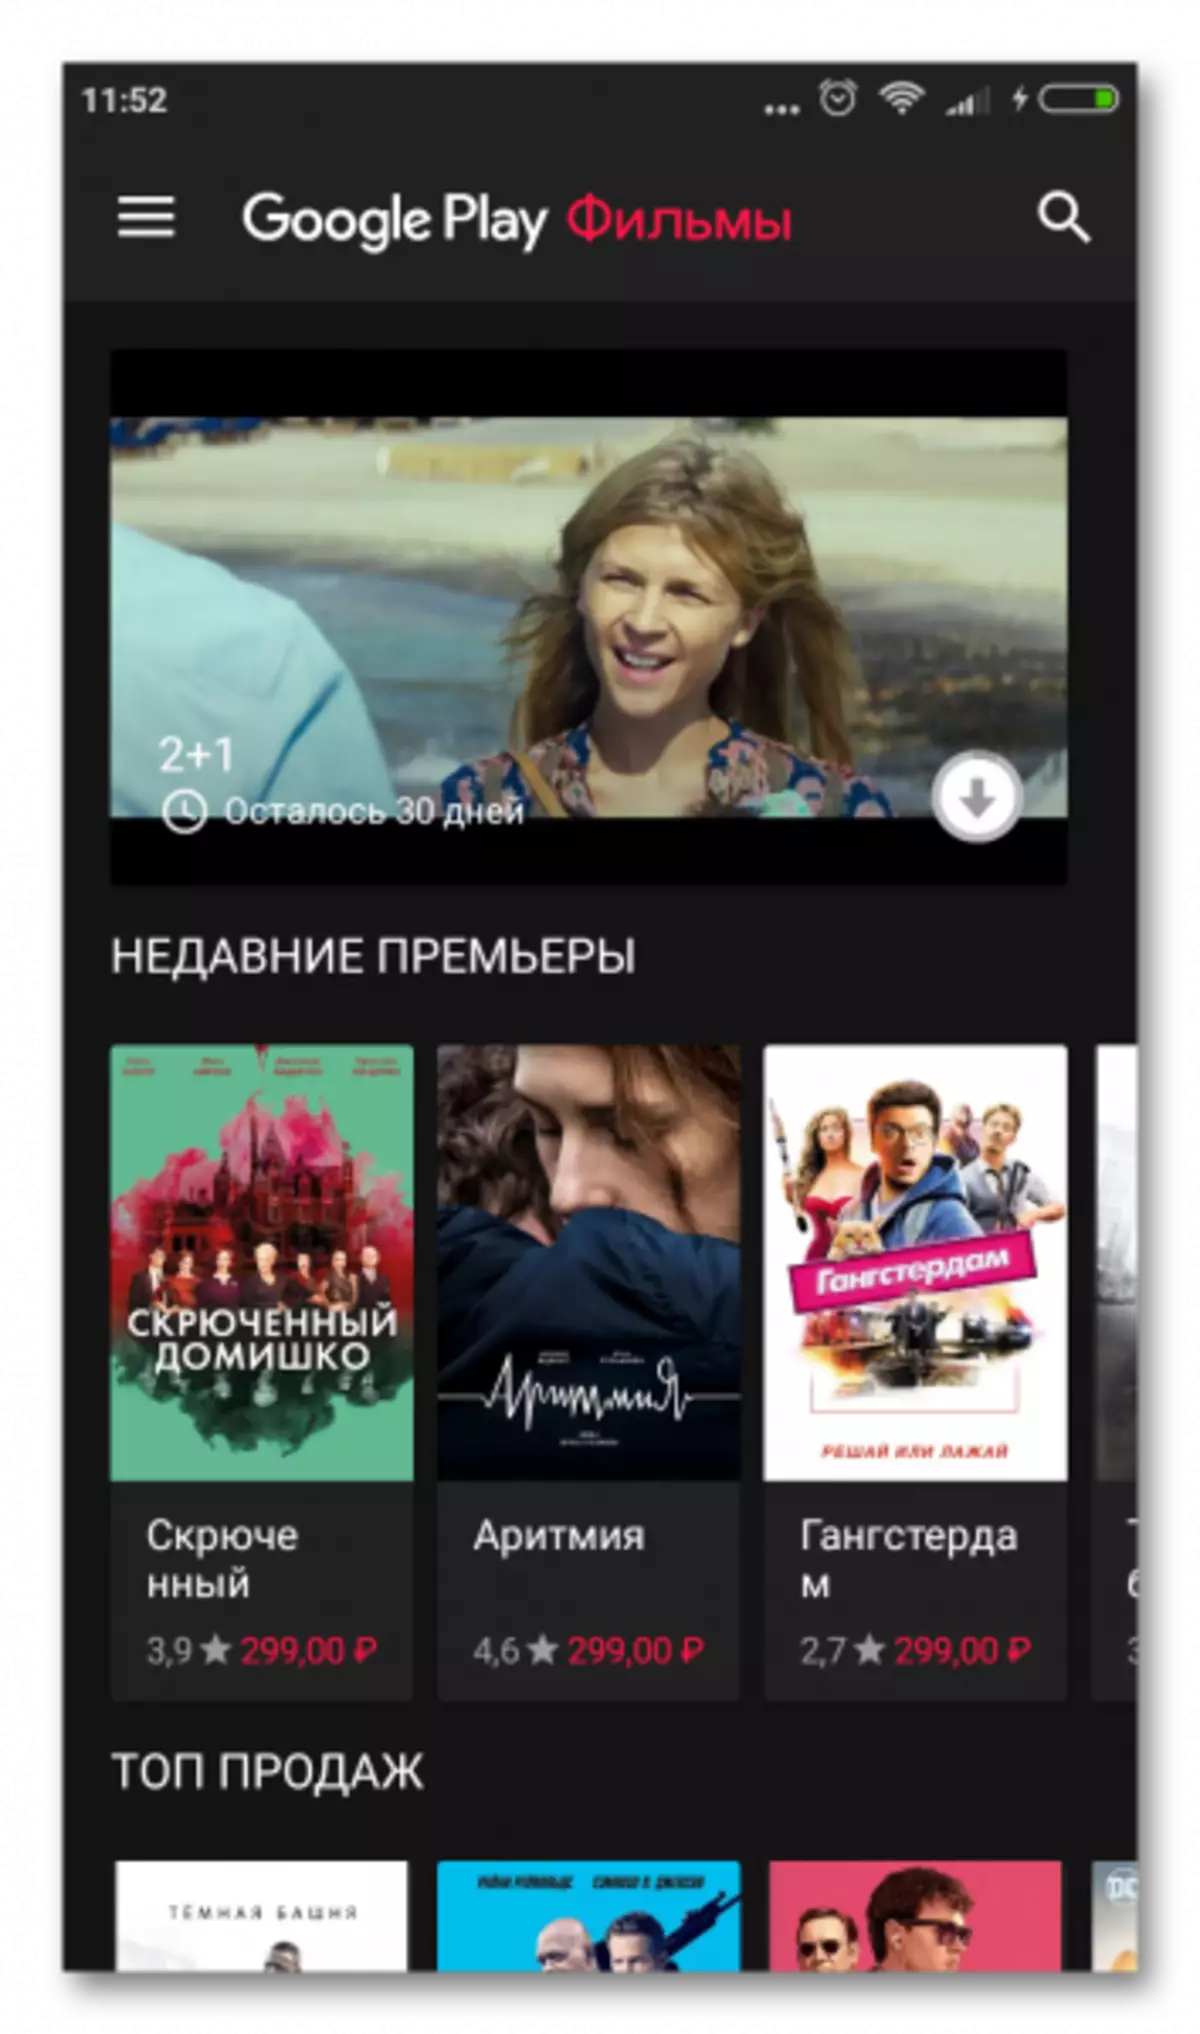 Google Play Movies amin'ny Android